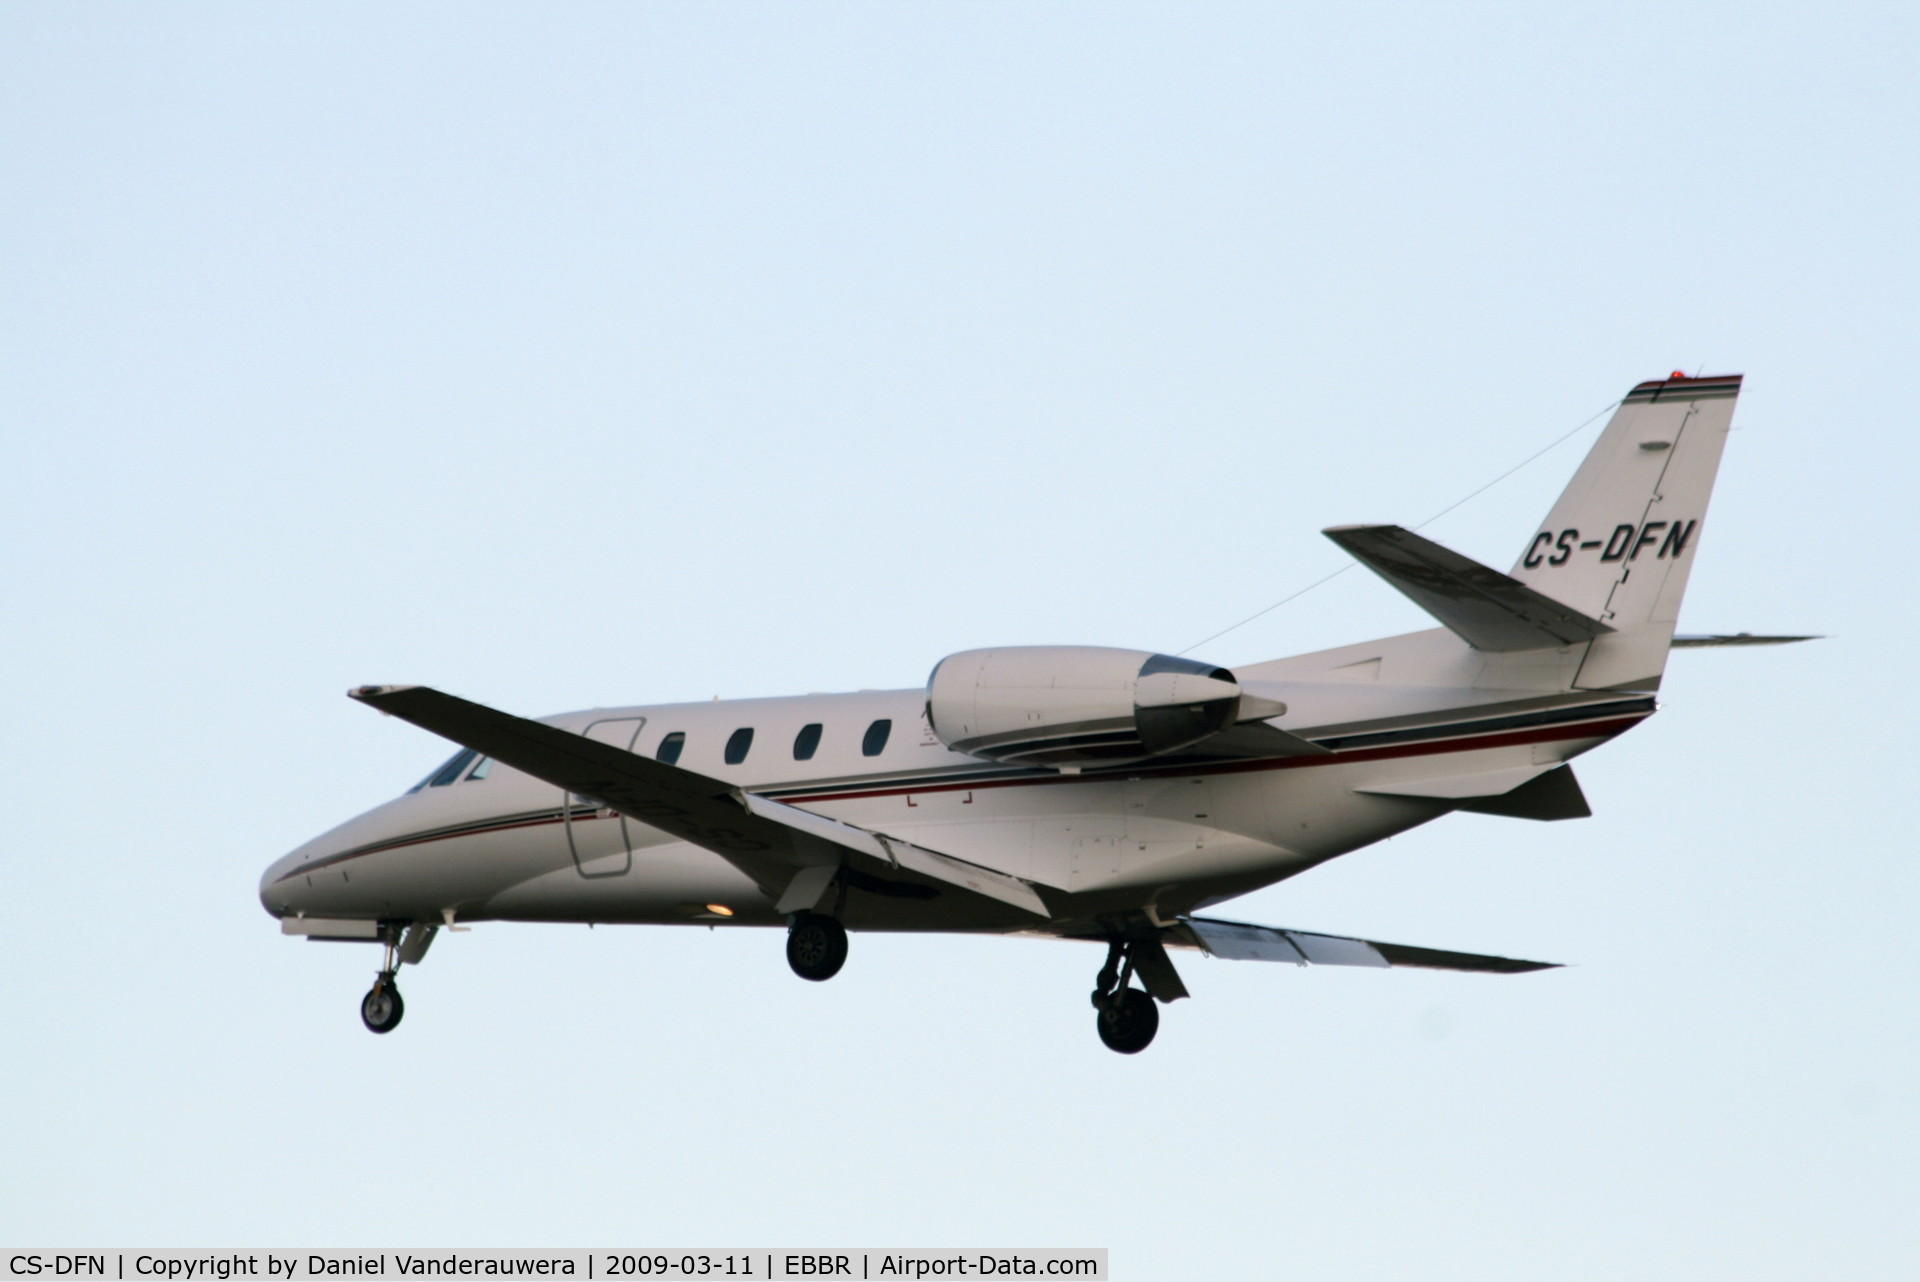 CS-DFN, 2002 Cessna 560XL Citation Excel C/N 560-5283, descending to rwy 25L